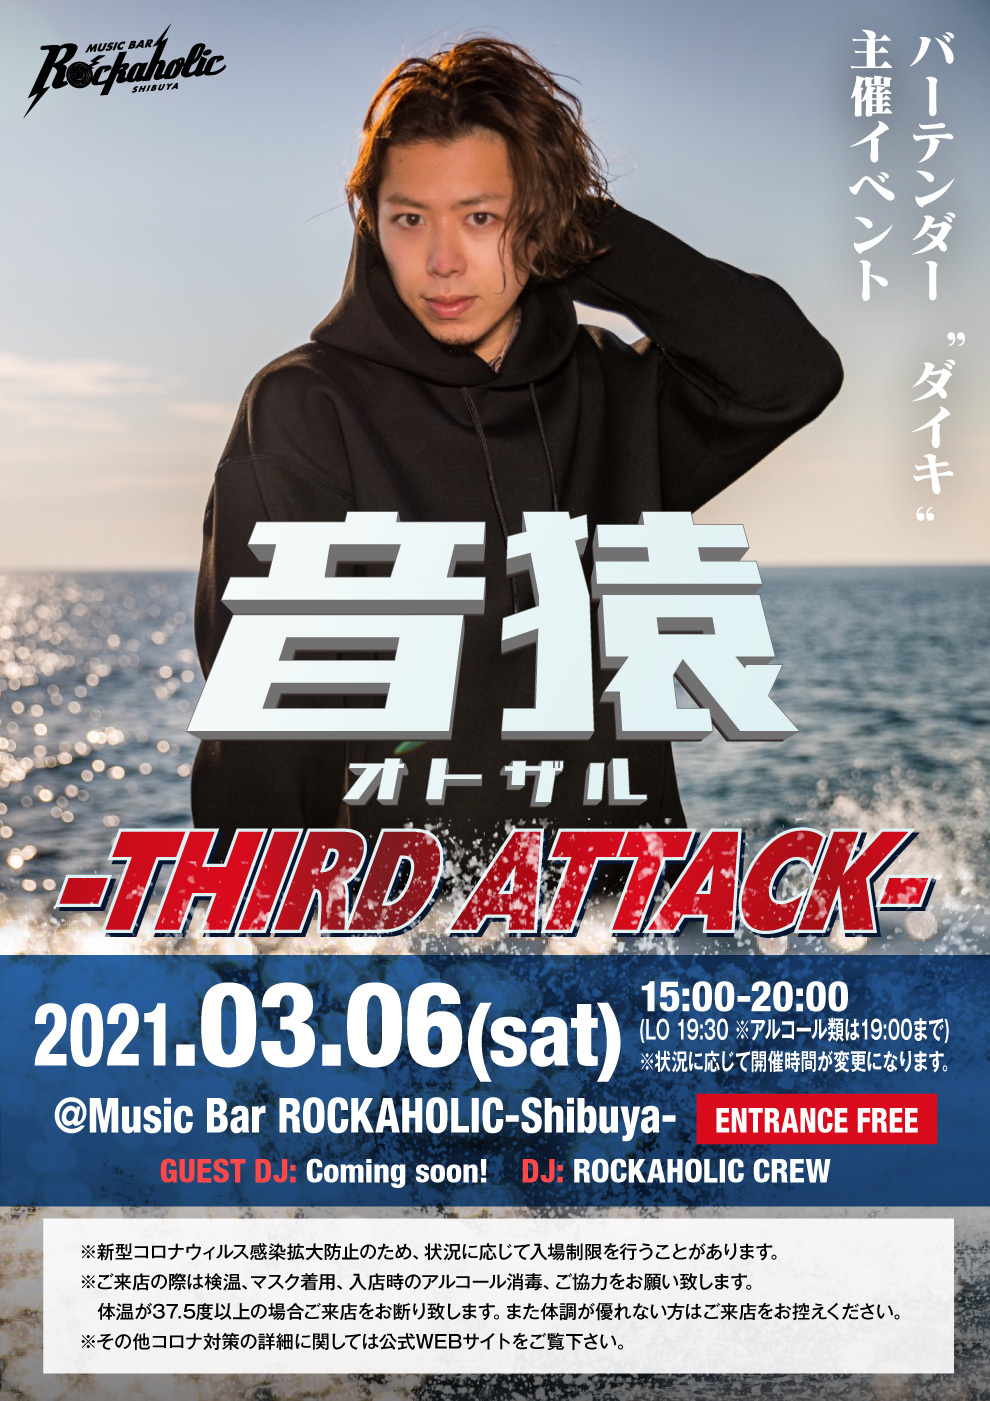 https://bar-rockaholic.jp/shibuya/blog/20210223_185658.jpg